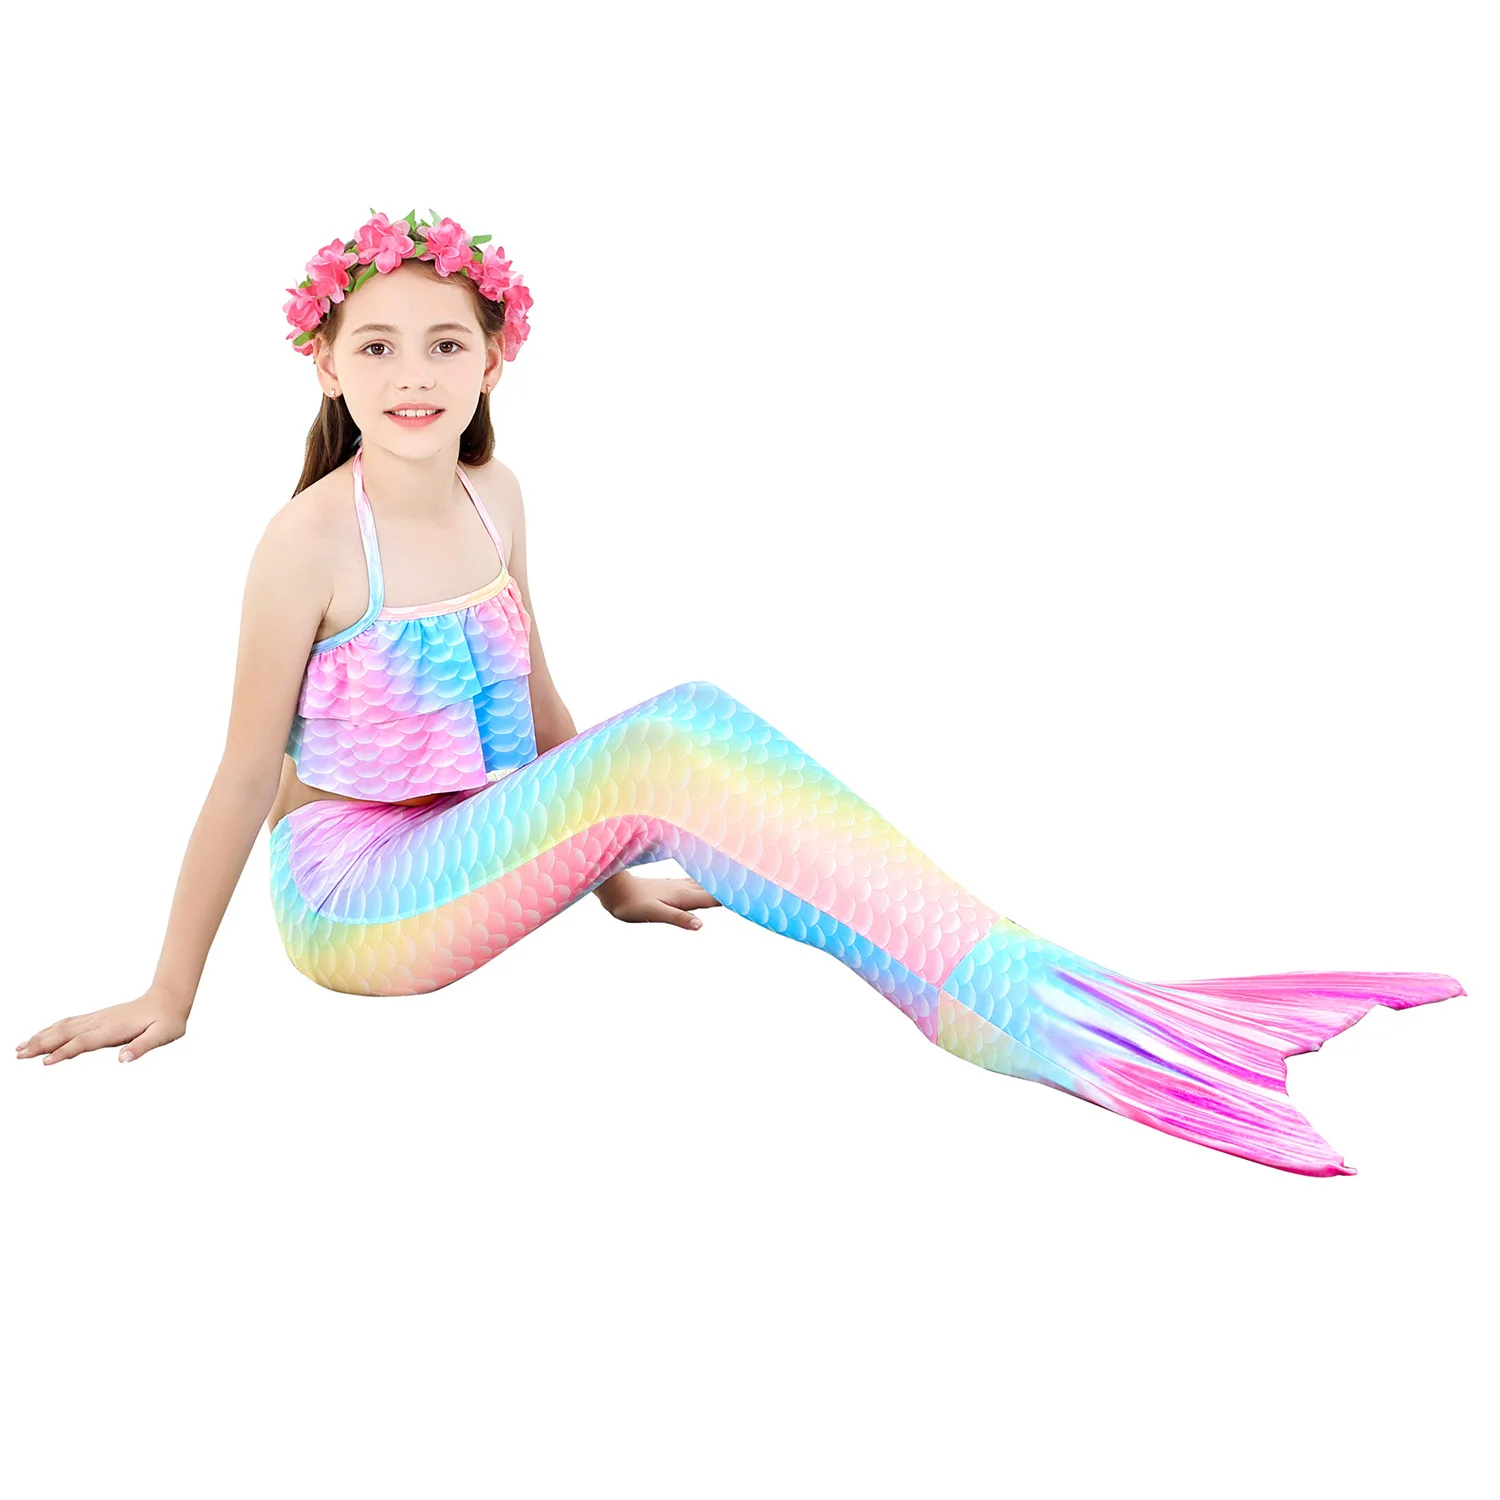 Mermaid Costume Set